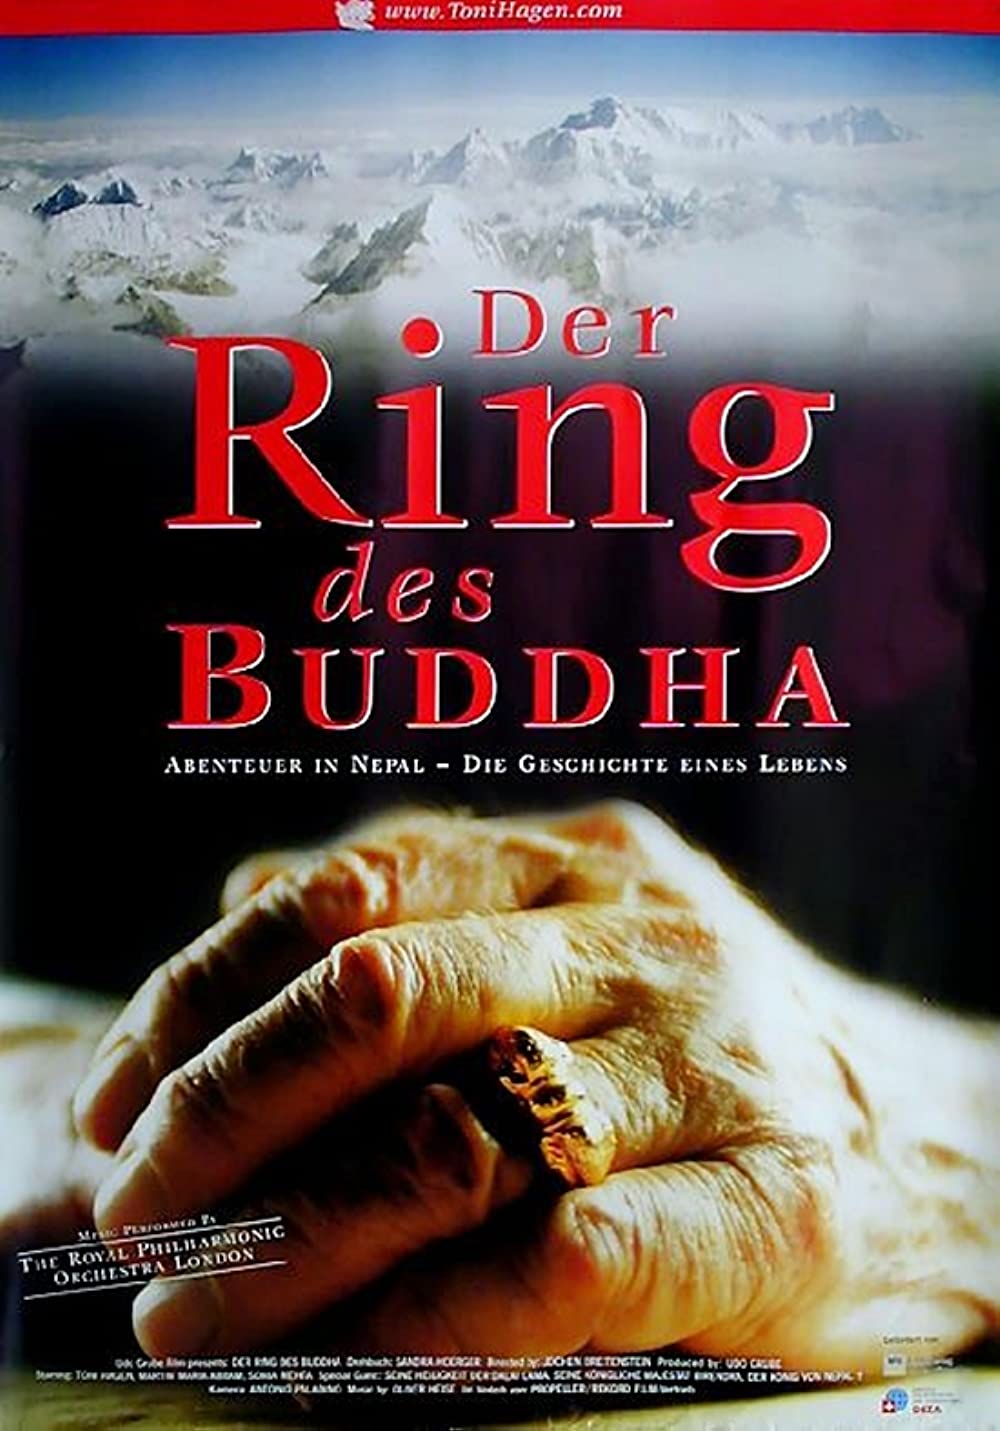 Filmbeschreibung zu Der Ring des Buddha